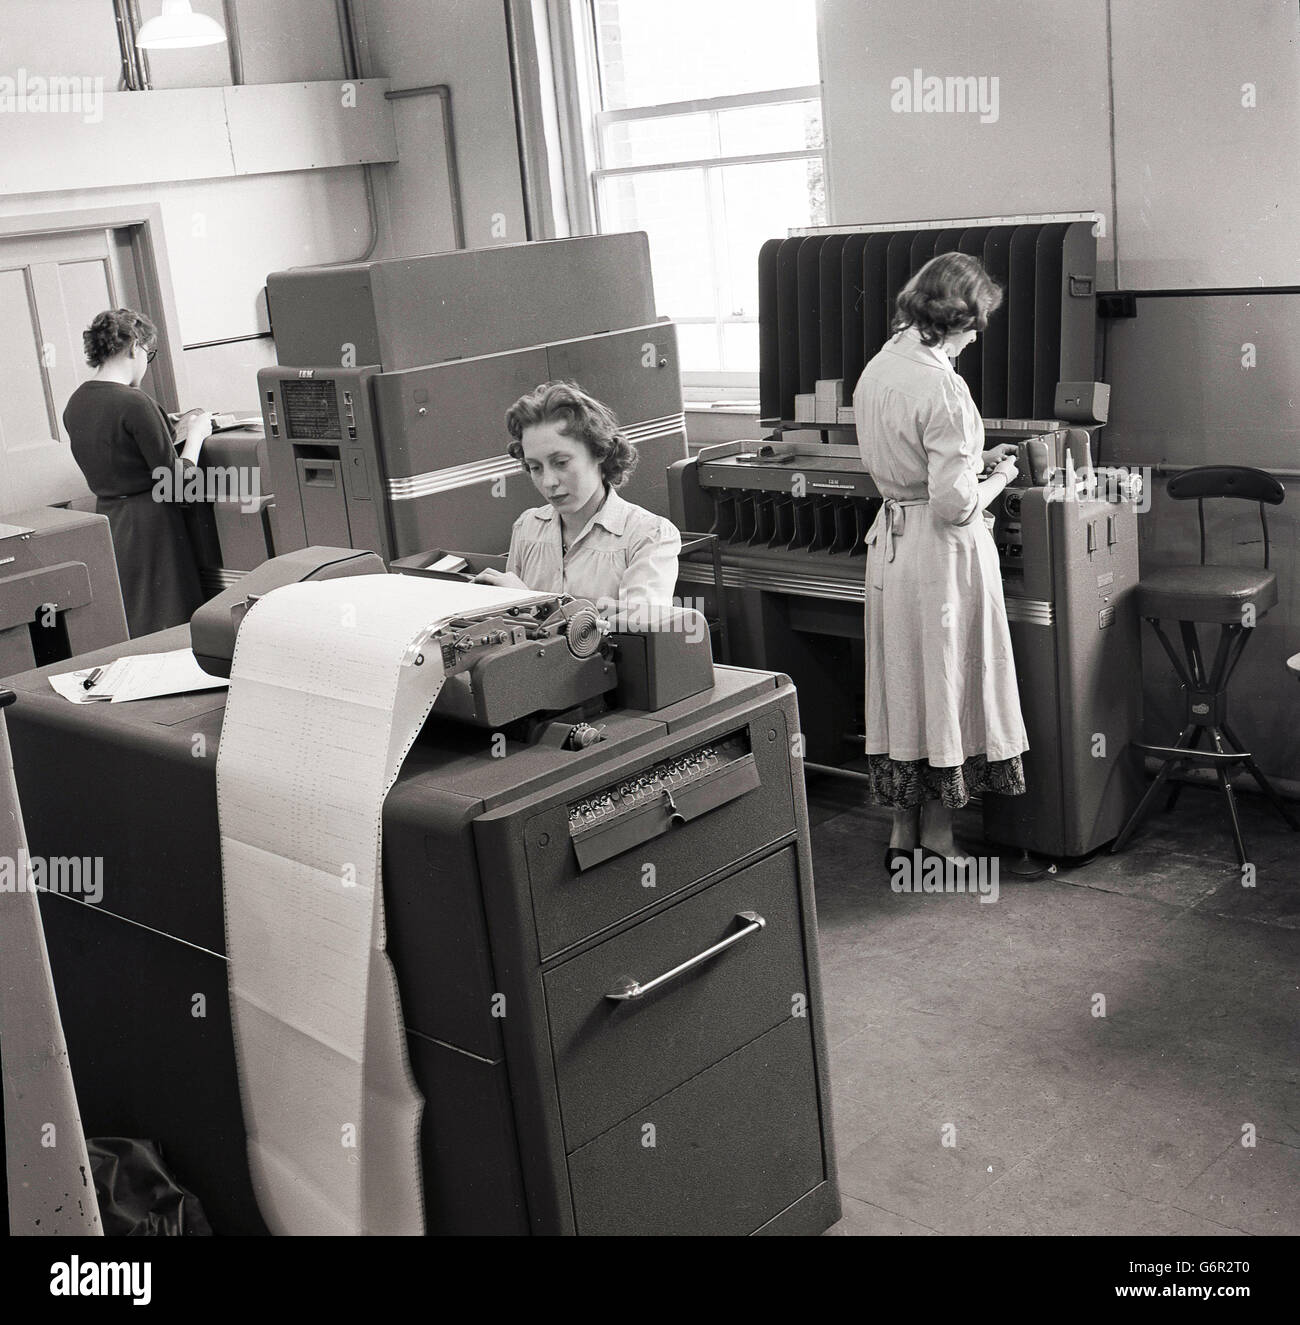 1950er-Jahren, historische, weibliche Arbeitnehmer im Büro mit großen Datenverarbeitung oder Einheit Abrechnungsmaschinen, eine Kombination aus einem großen Schreibmaschine und Rechenmaschine, Wegbereiter der modernen Computer. Stockfoto